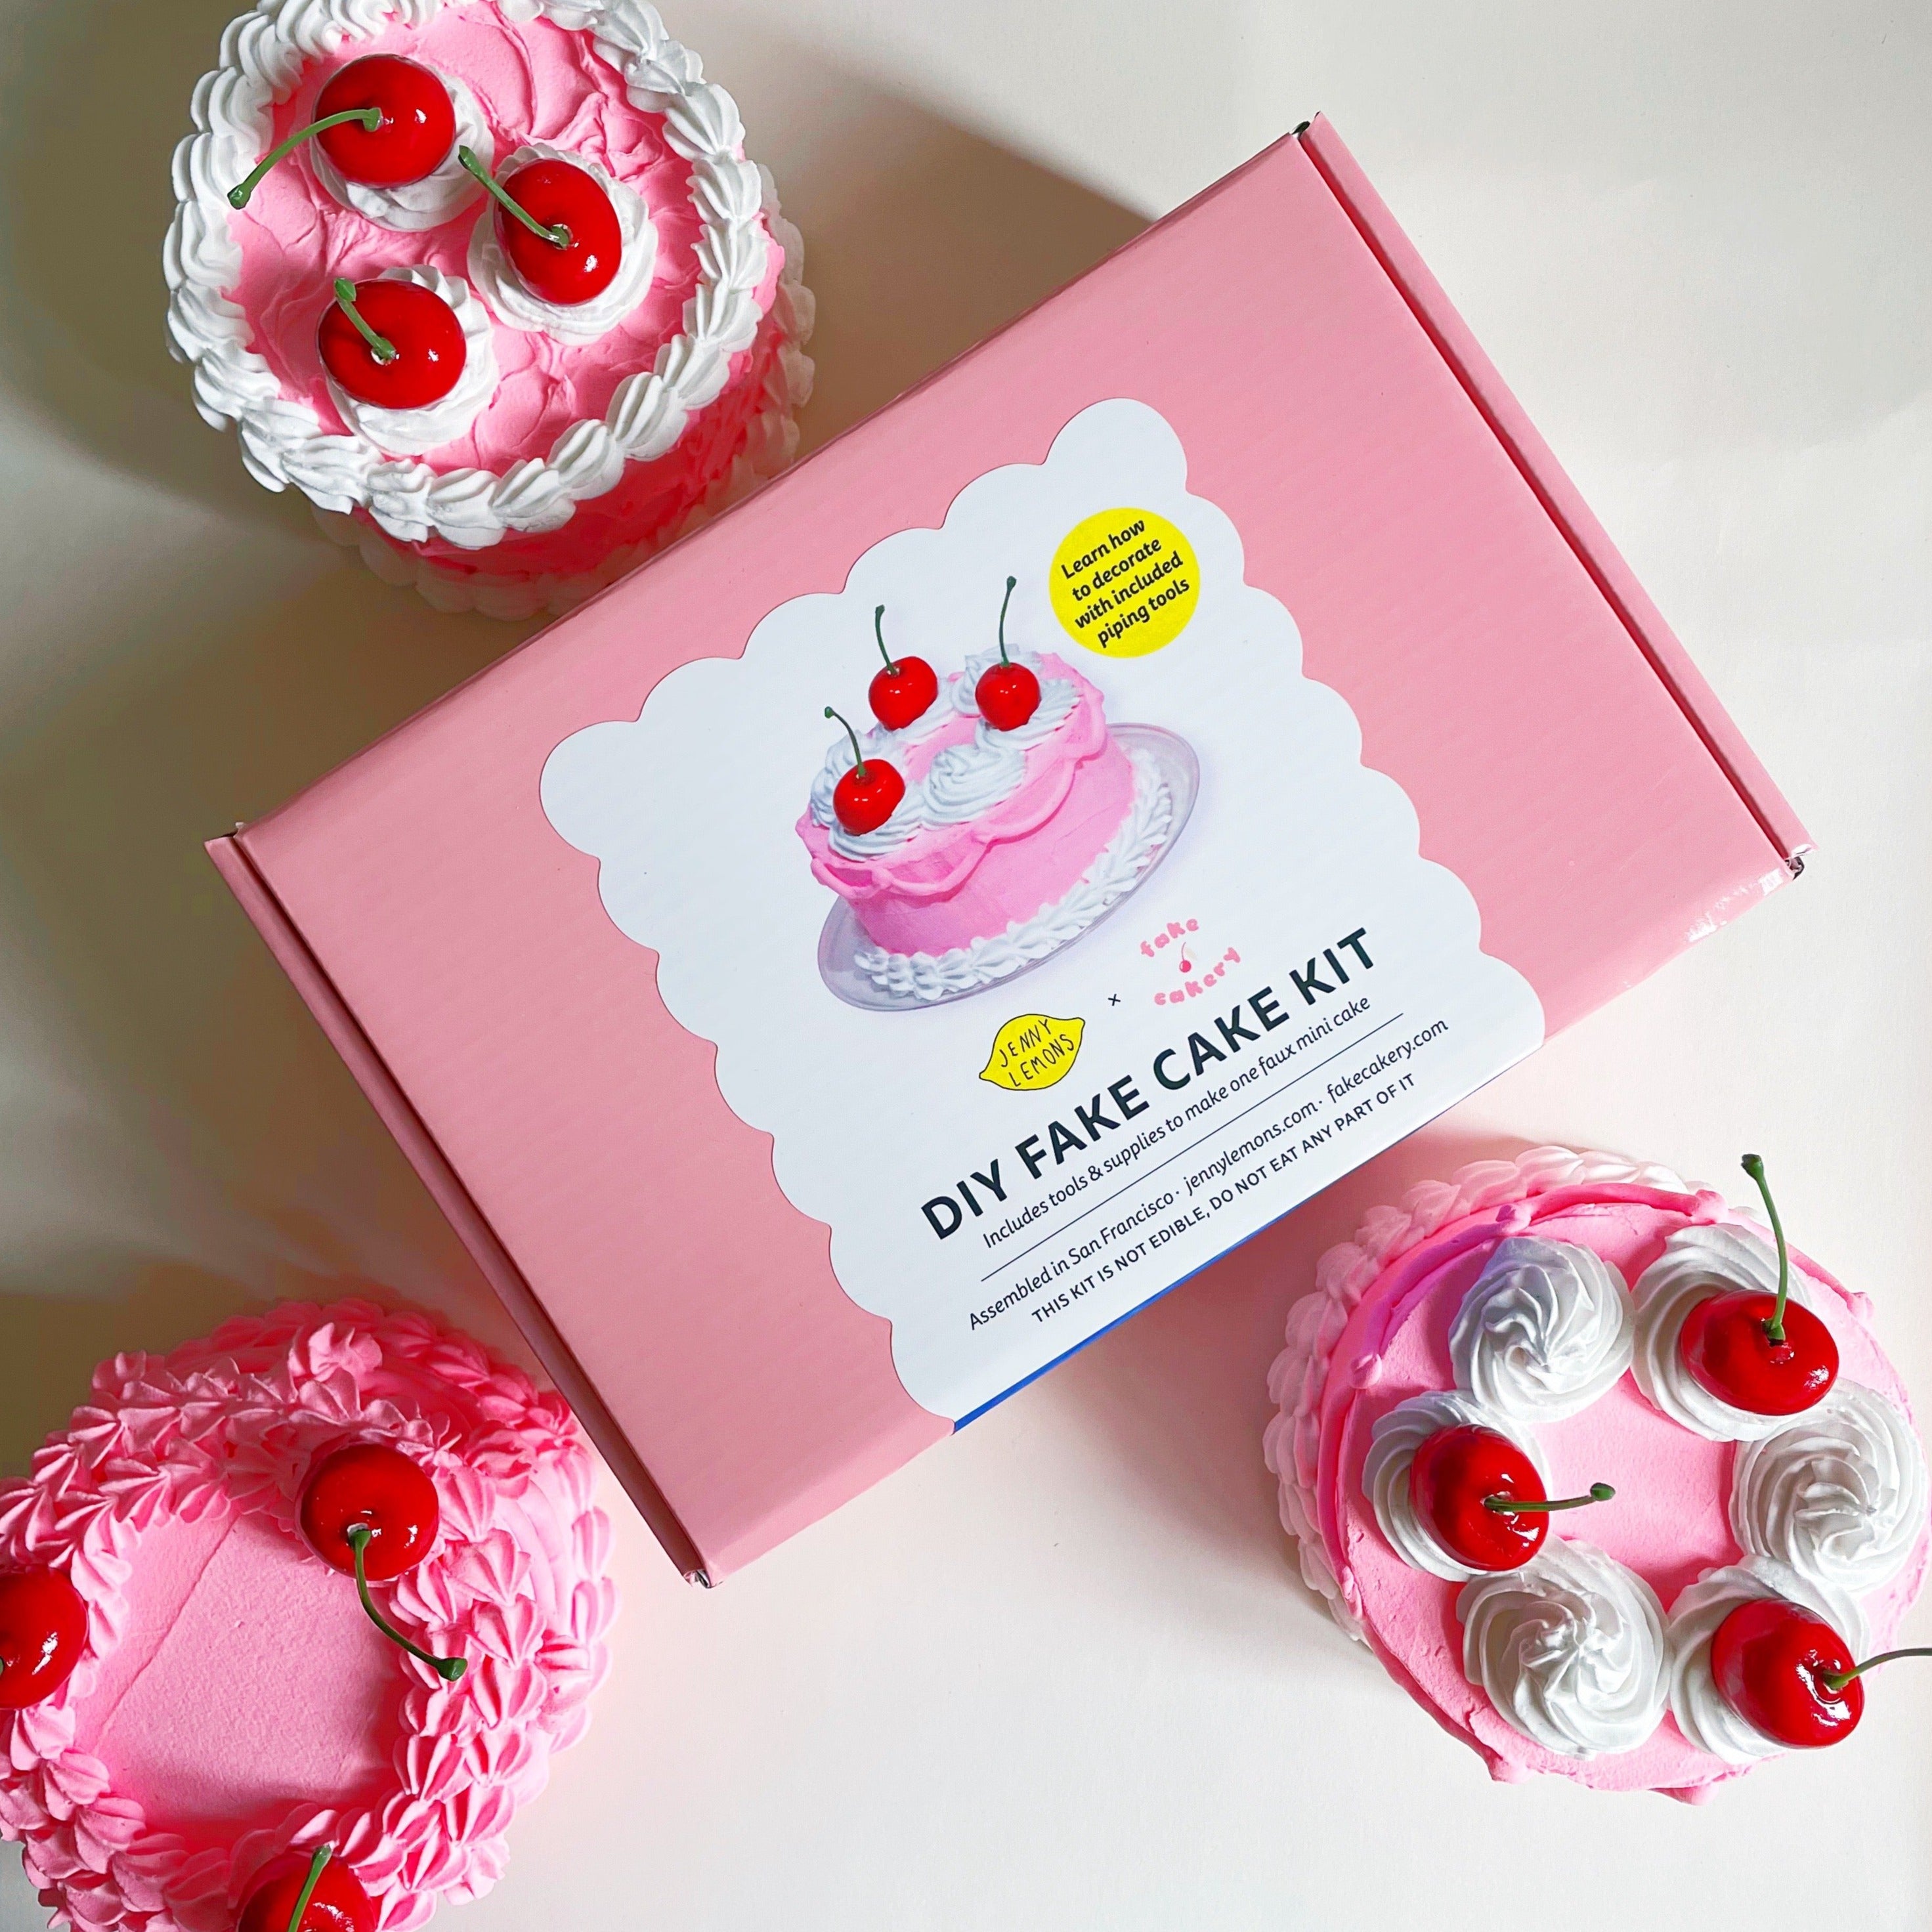 DIY Fake Cake Gift Box Tutorial